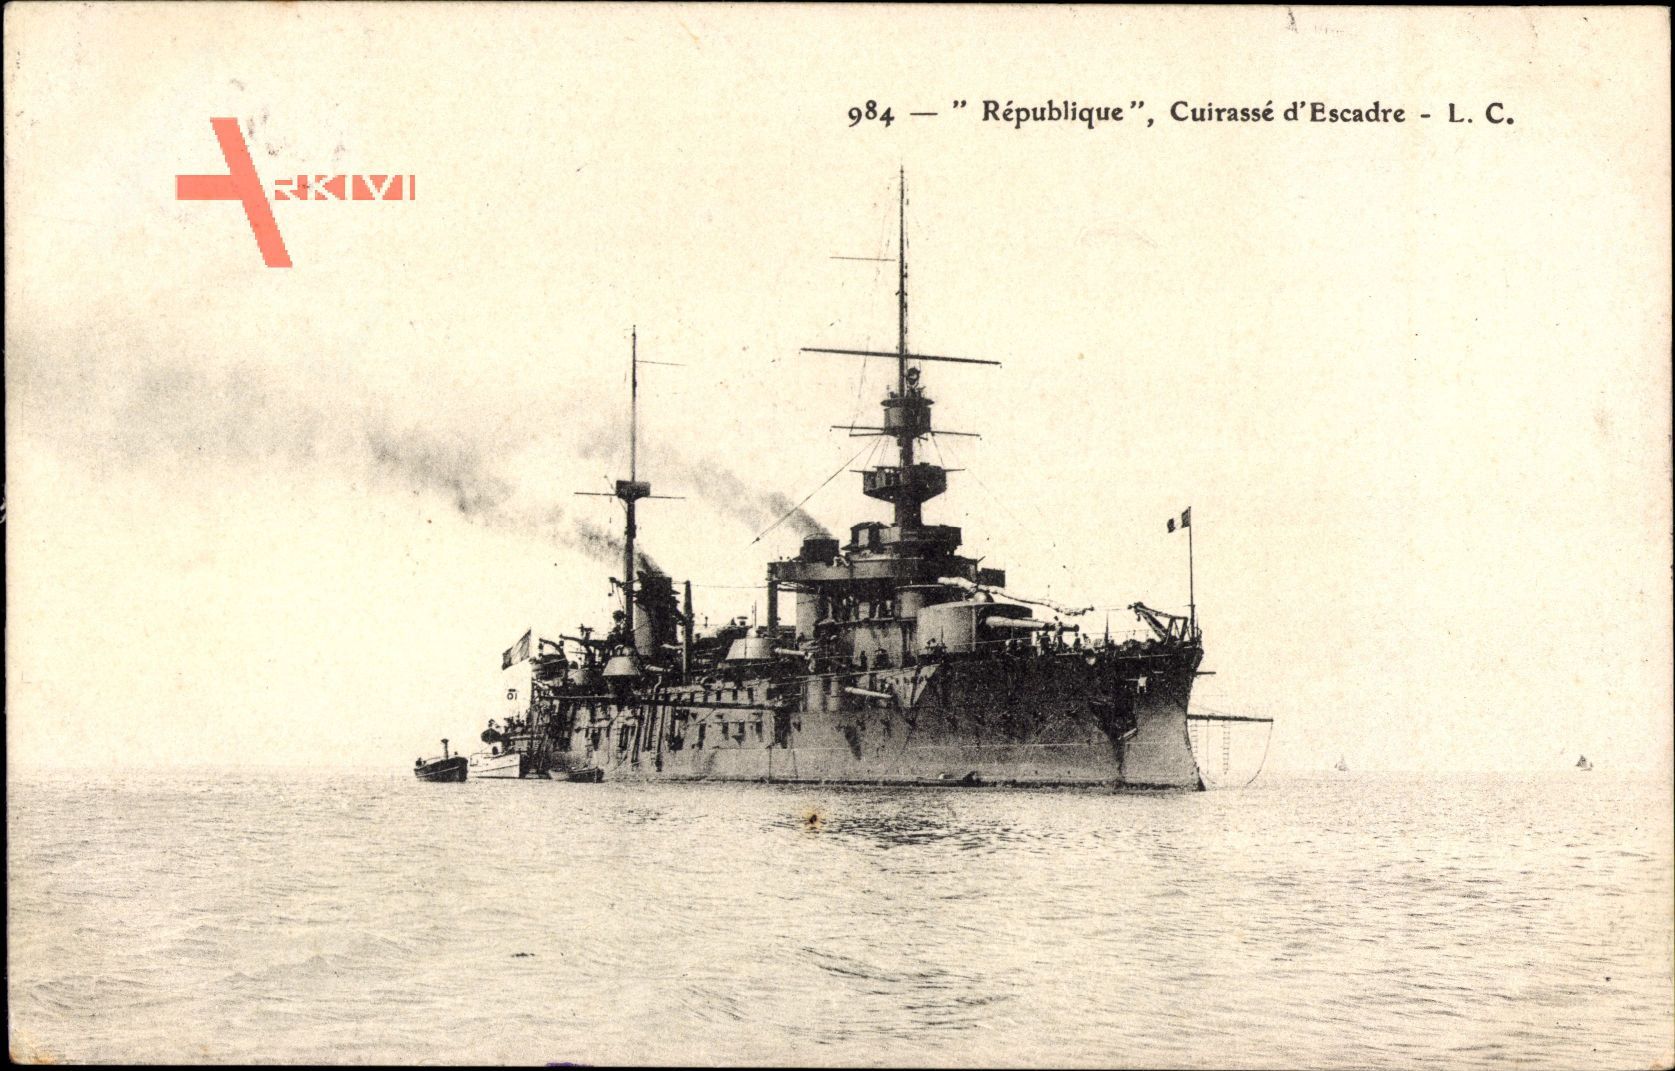 Französisches Kriegsschiff, République, Cuirassé dEscadre